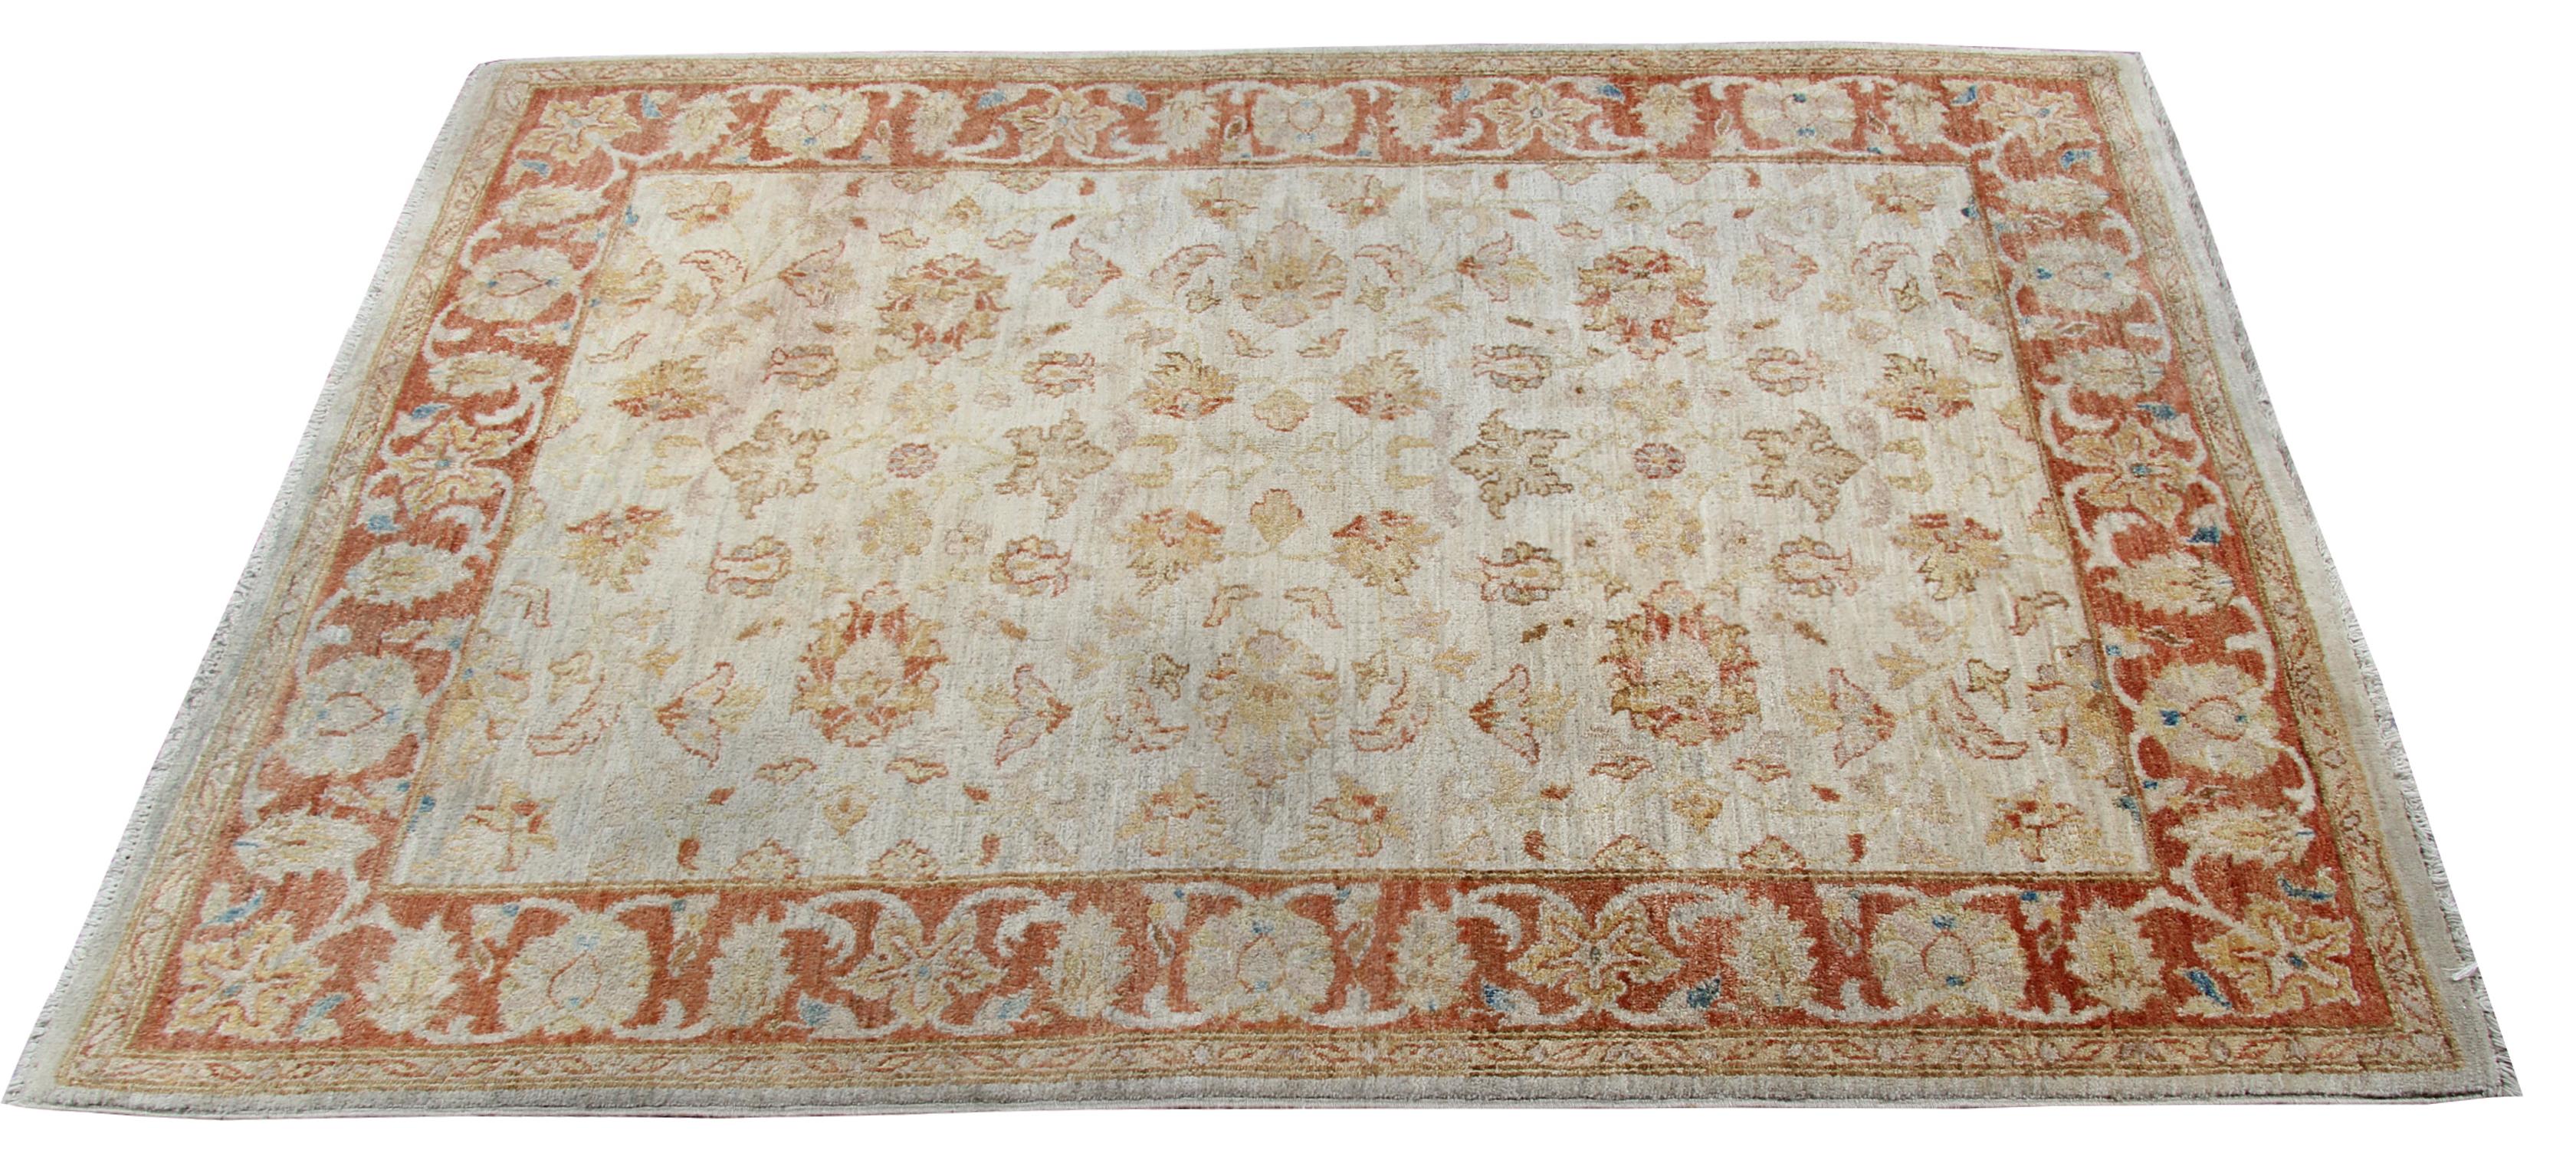 Dieser Orientteppich ist ein Beispiel für handgefertigte Teppiche, die in Afghanistan von geschickten Knüpfern hergestellt werden. Die handgesponnene Wolle wird mit natürlichen Farbstoffen gefärbt und der Teppich anschließend professionell gewaschen